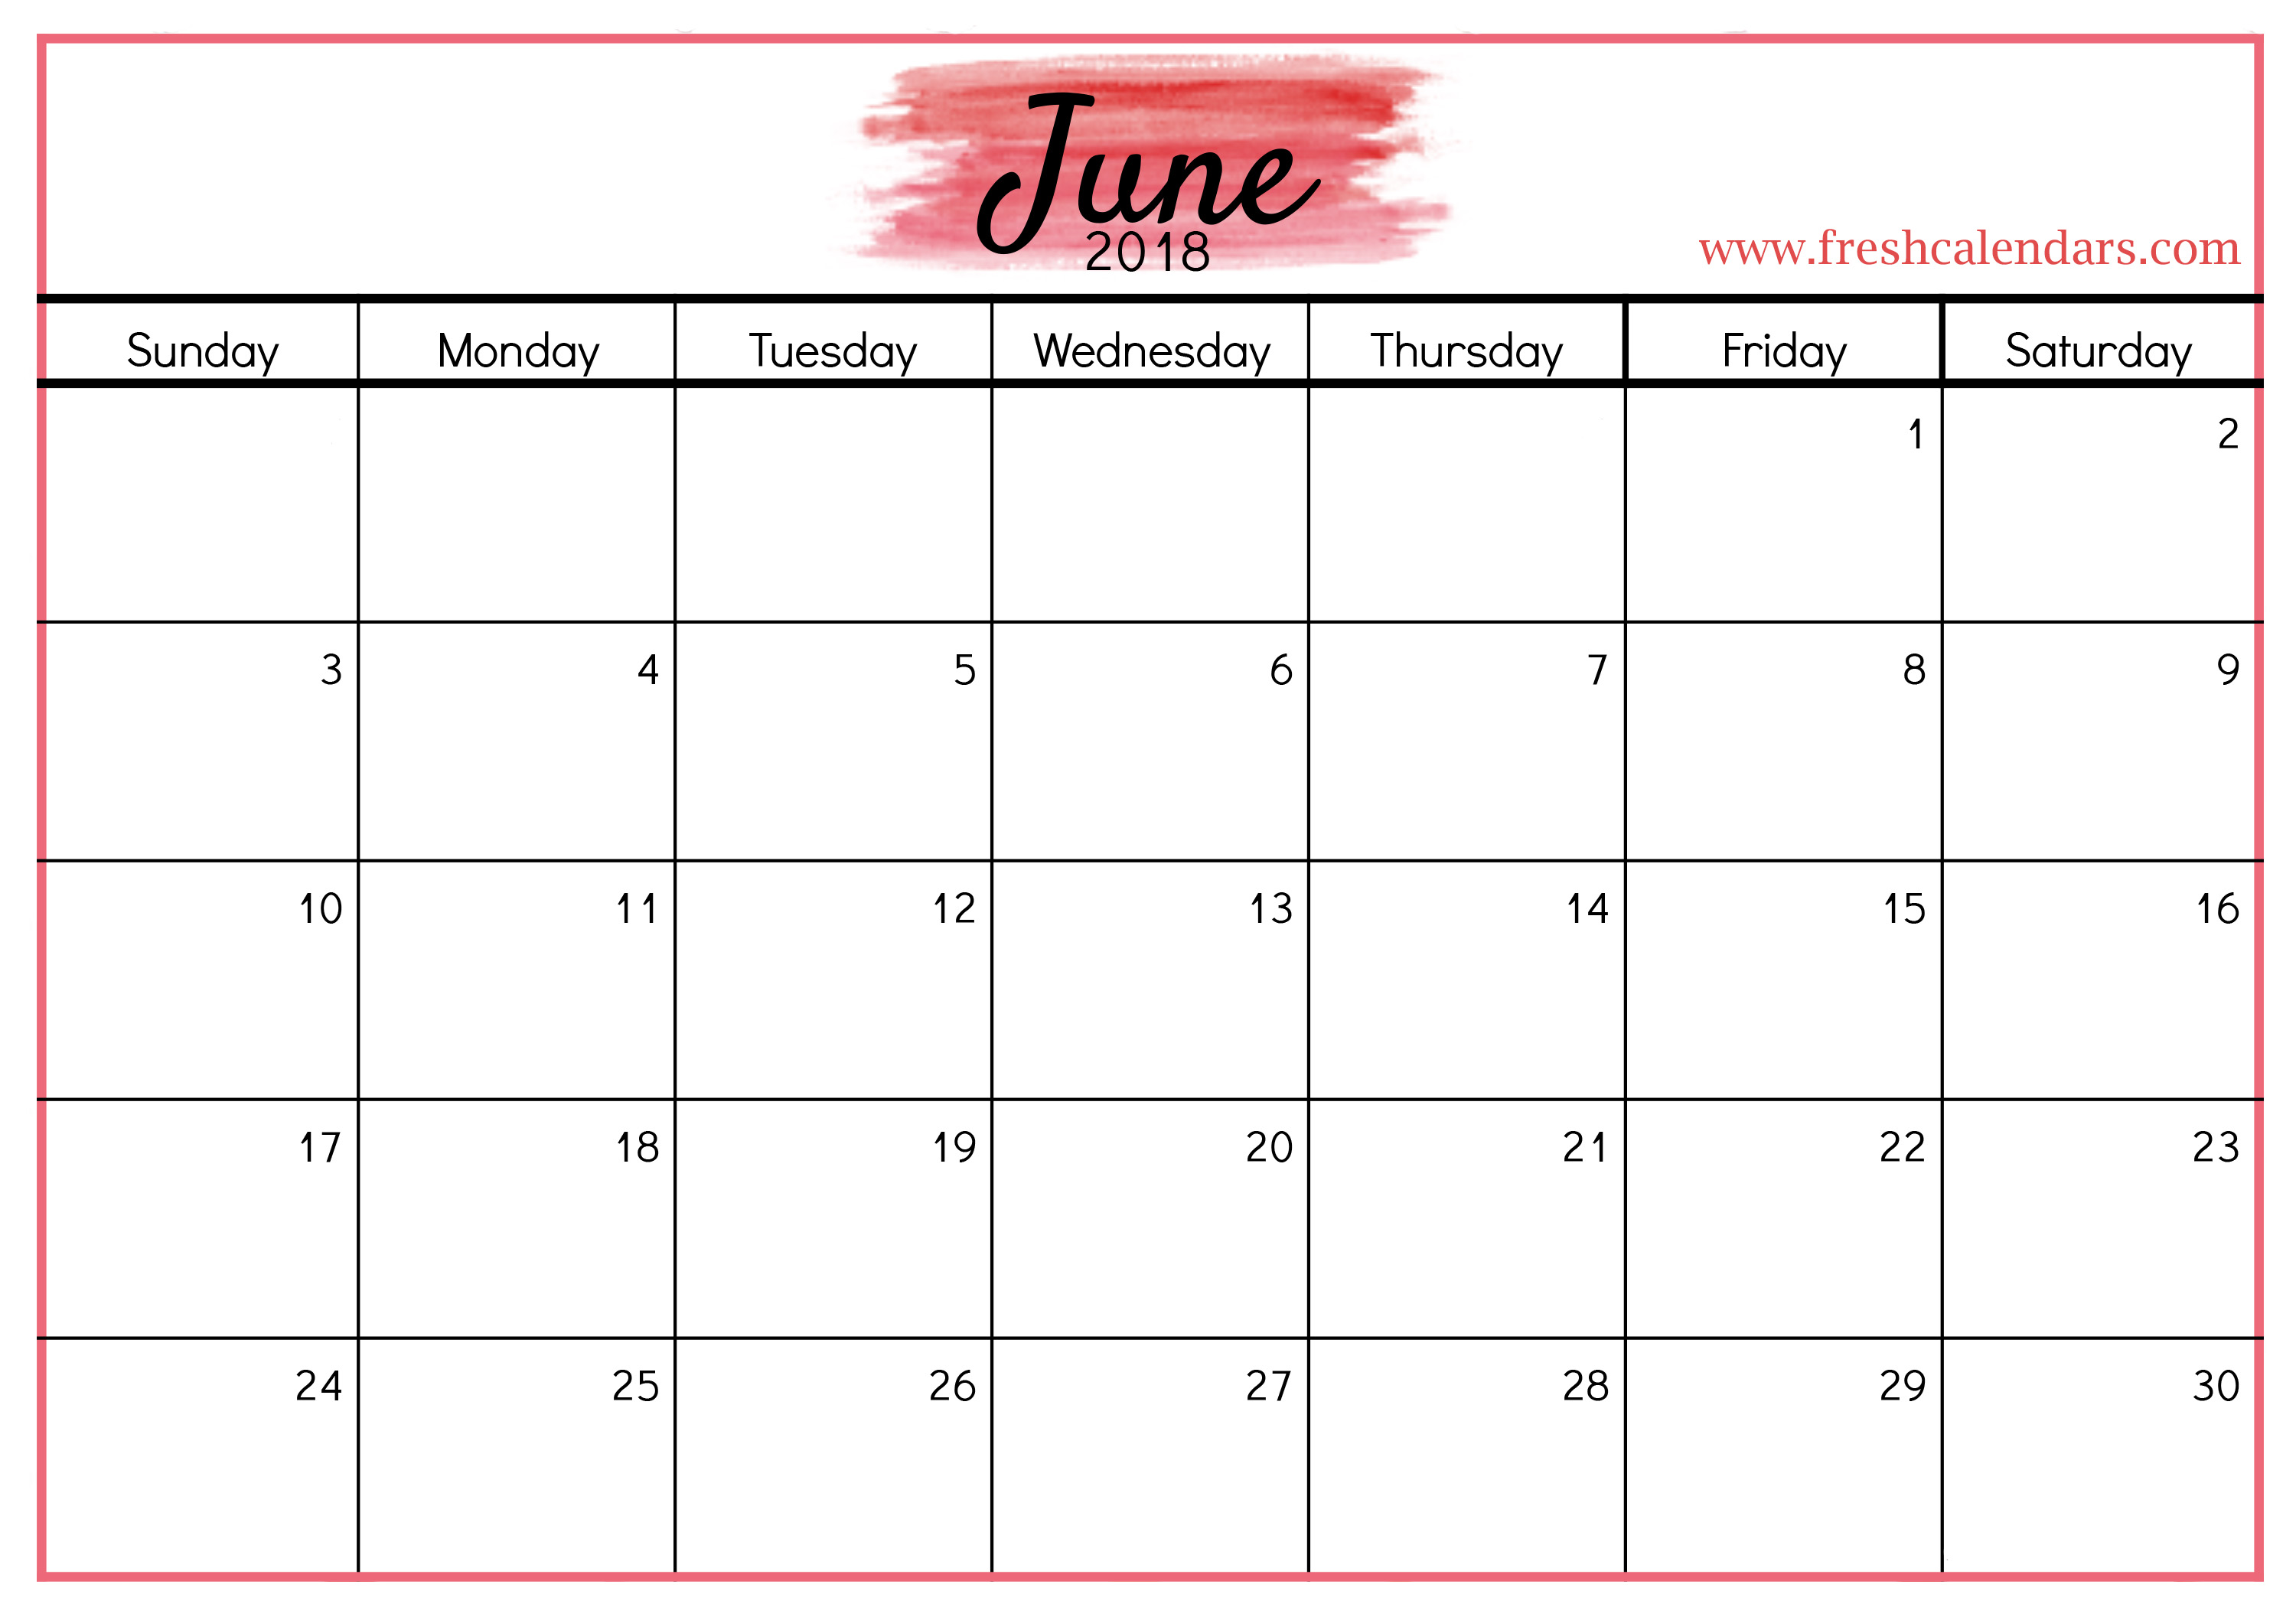 Printable June 2018 Calendar Towncalendarscom Free 5 June 2018